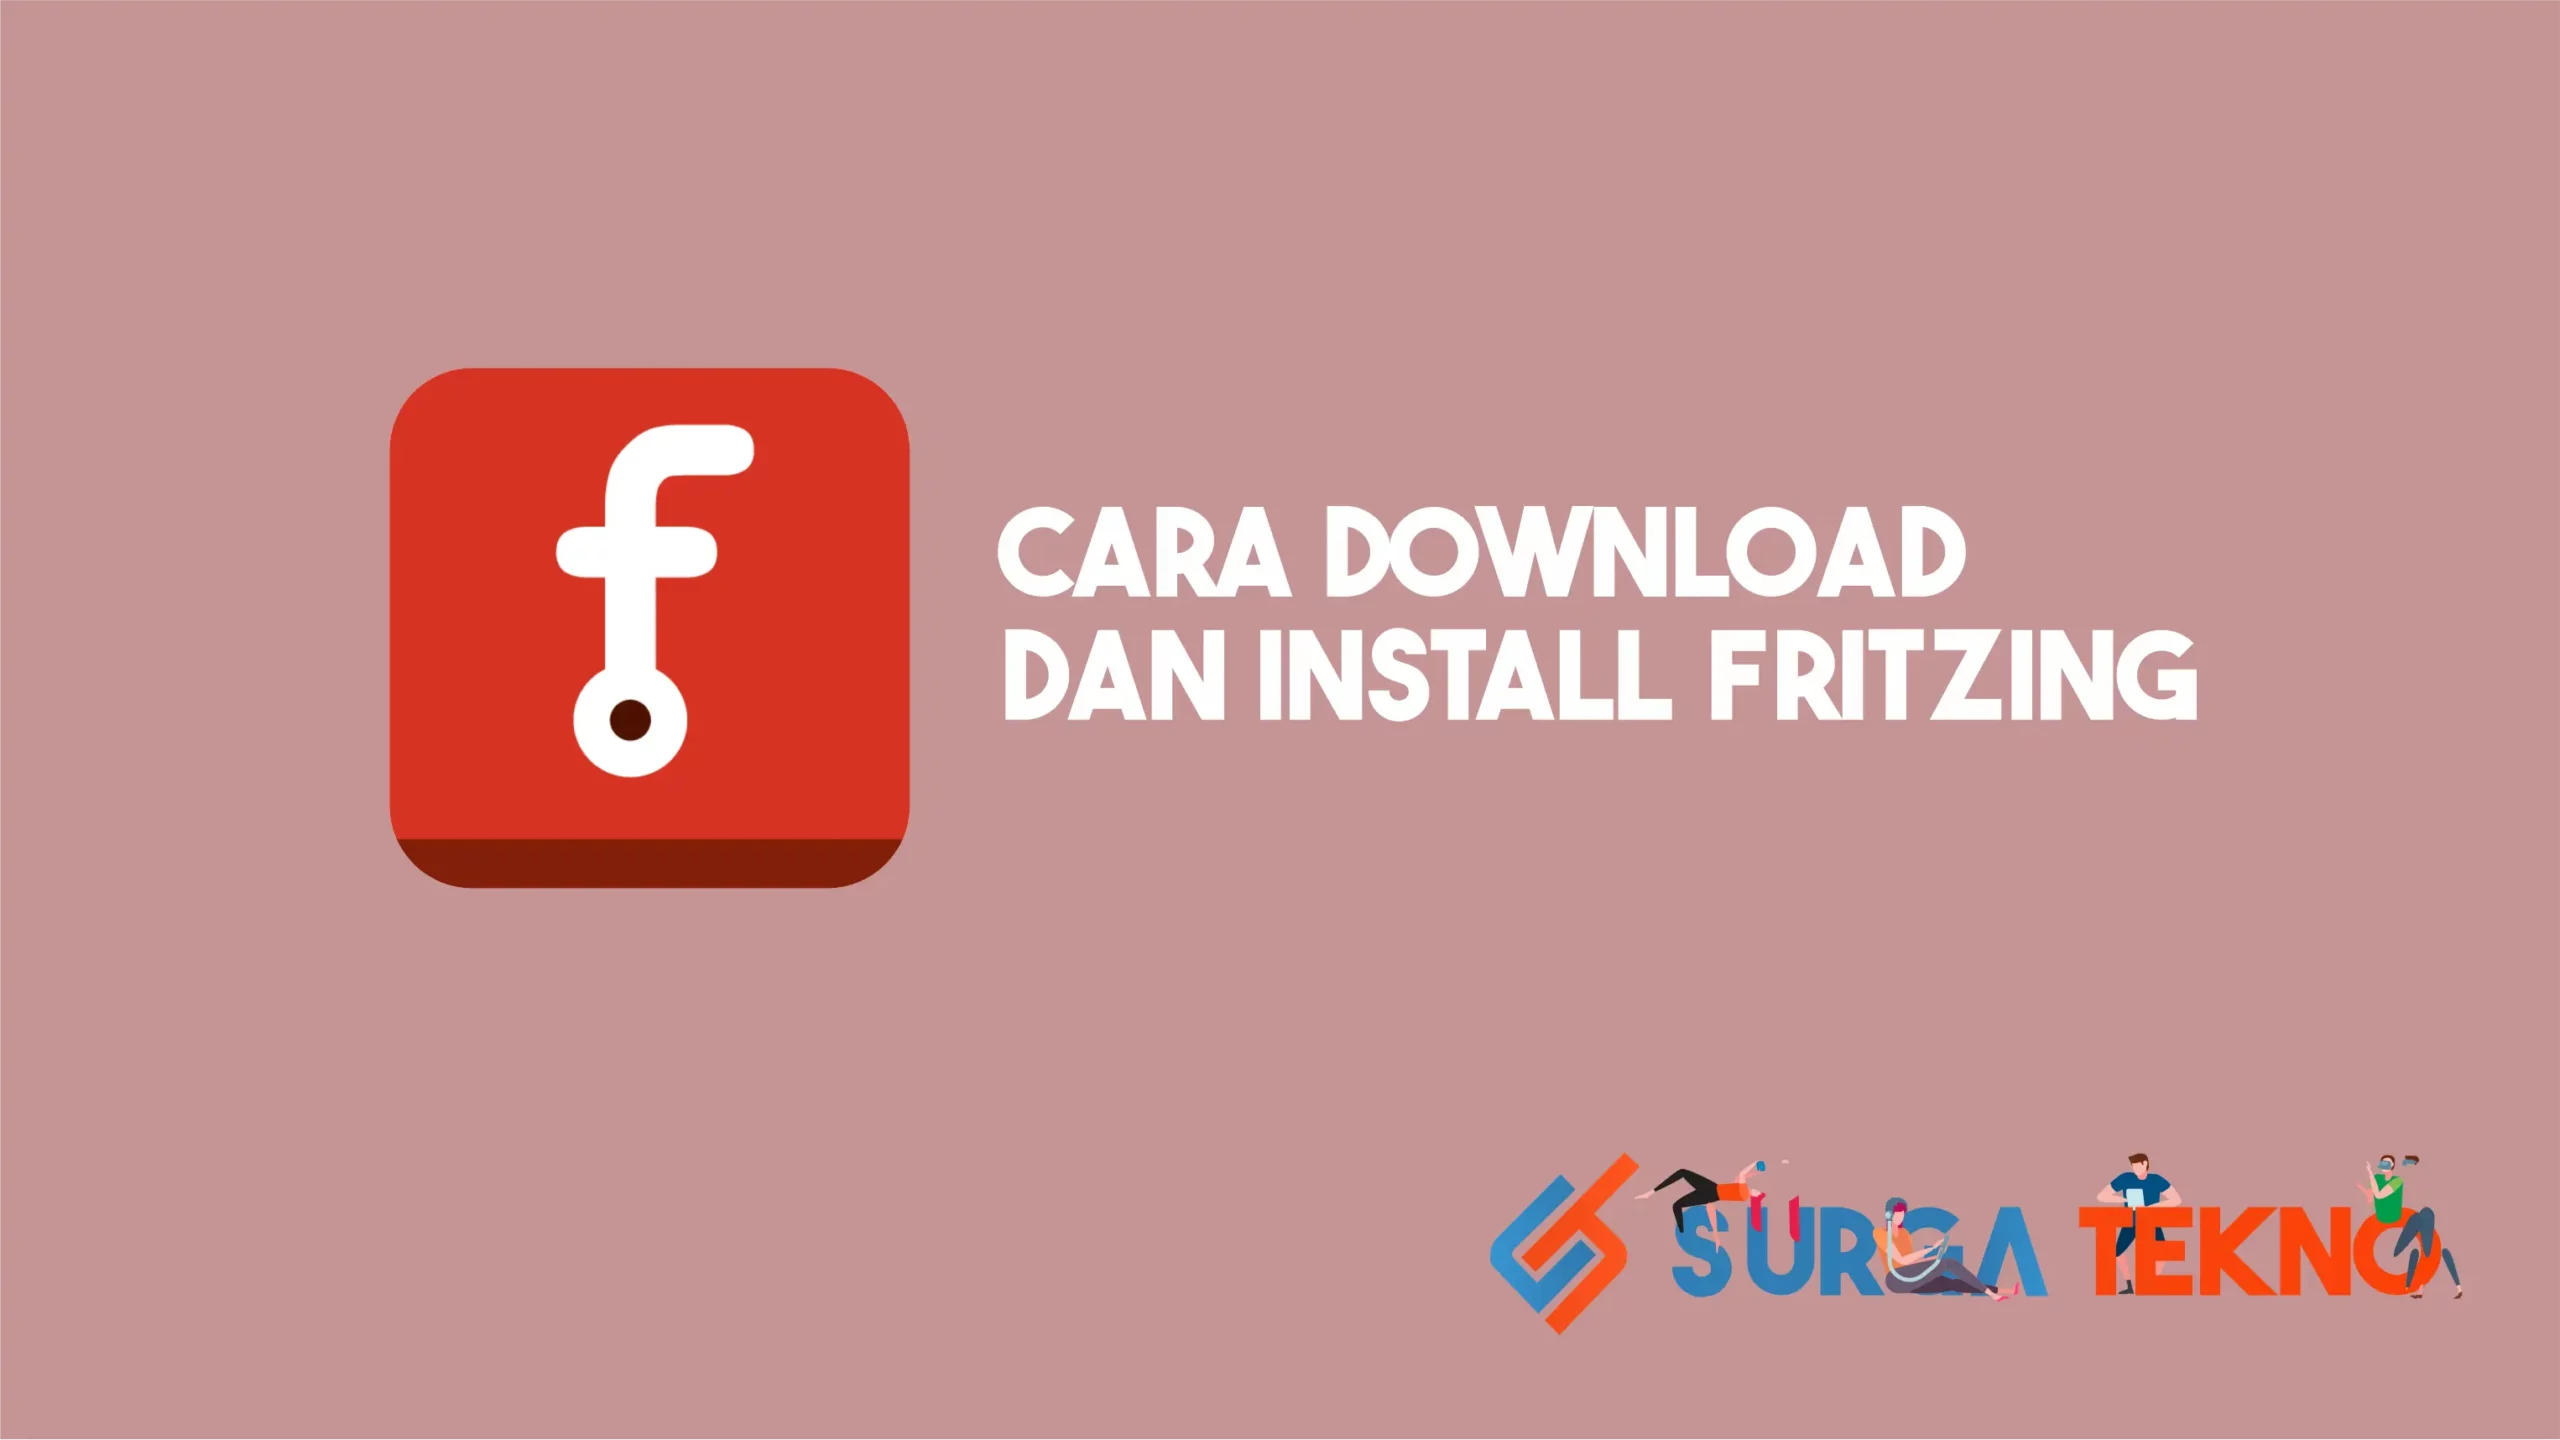 Cara Download dan Install Fritzing